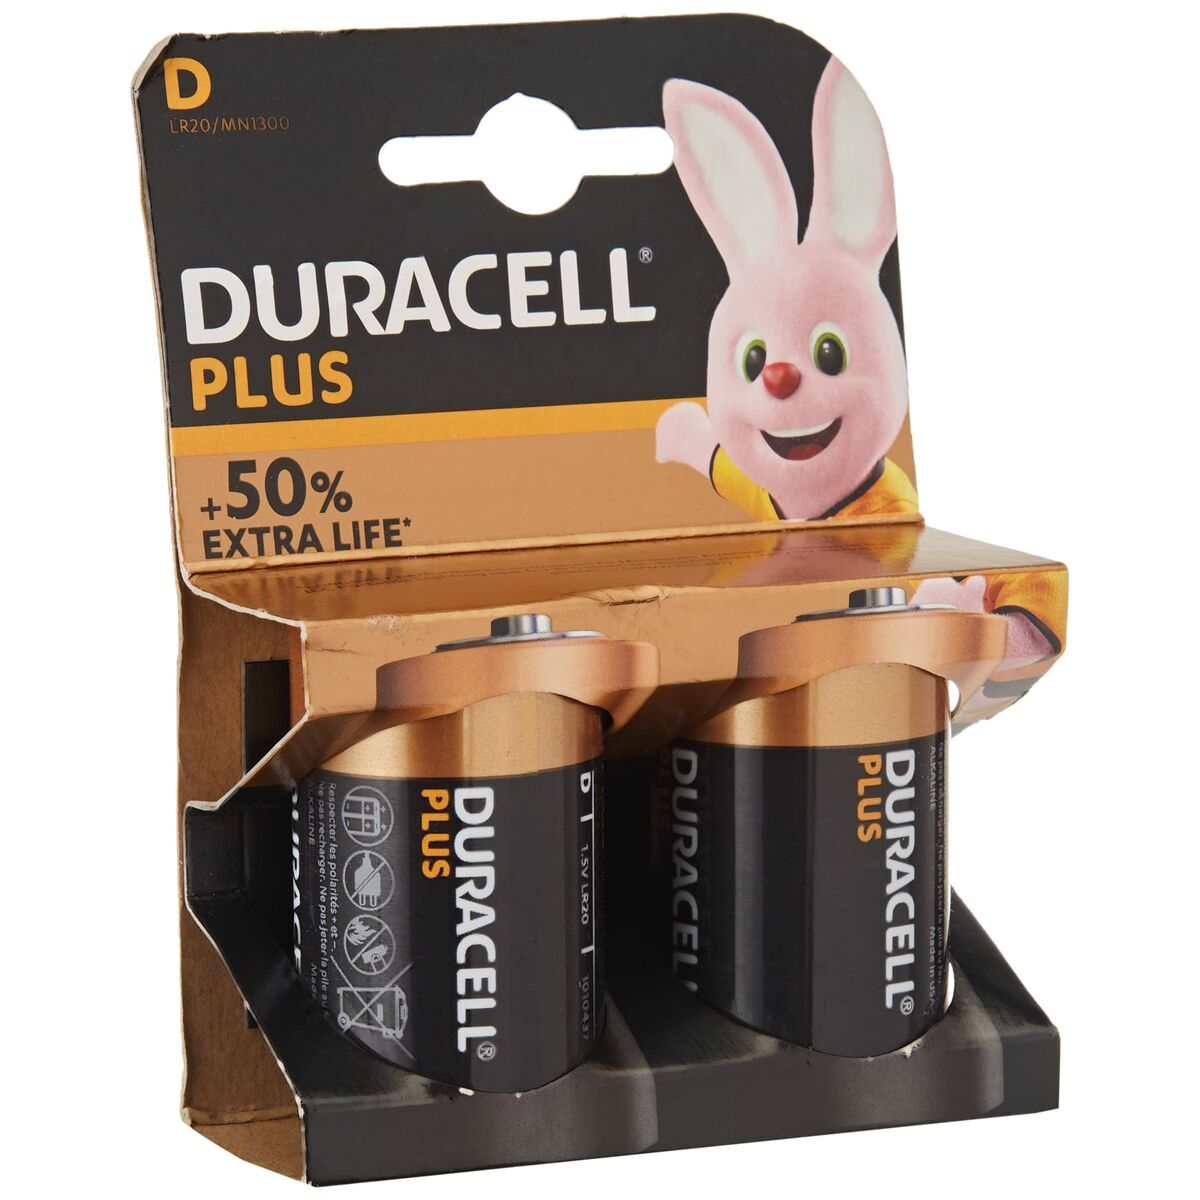 DURACELL 019171 POWER-D Volt Batterie, K2 Alkaline, 2 D MN1300/LR20 Stück 1.5